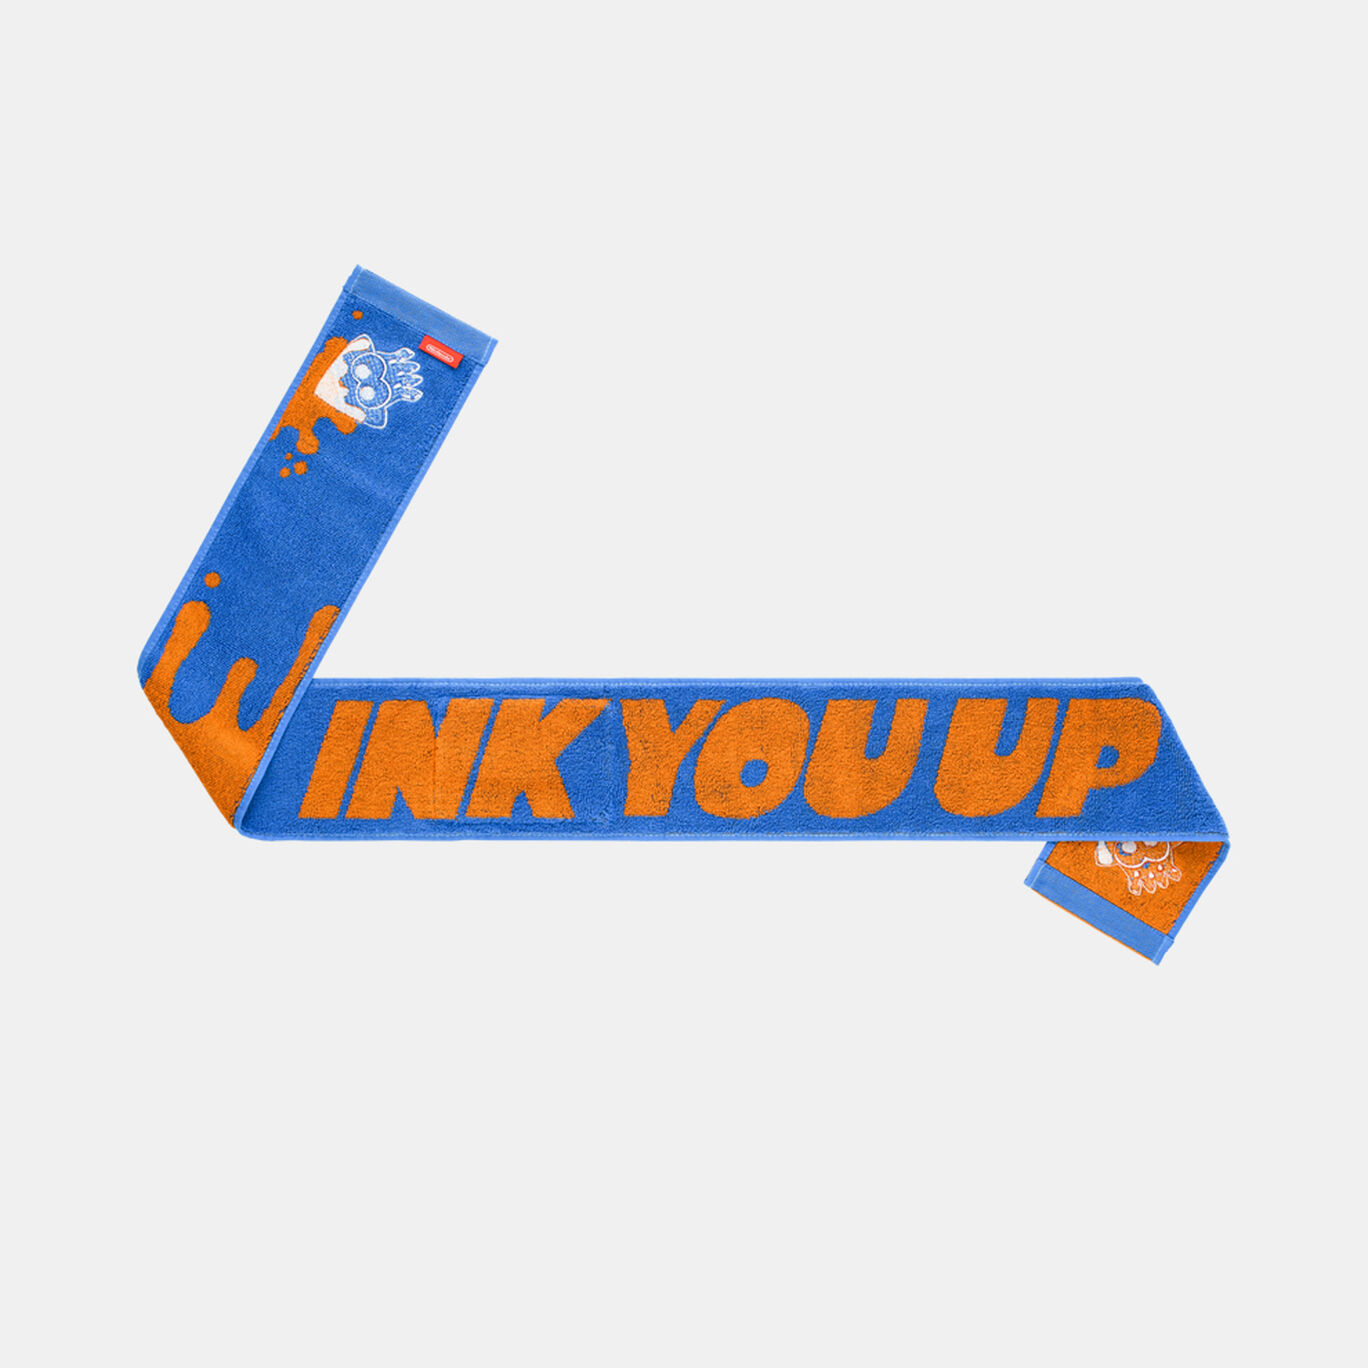 ポケット付きマフラータオル INK YOU UP【Nintendo TOKYO取り扱い商品】